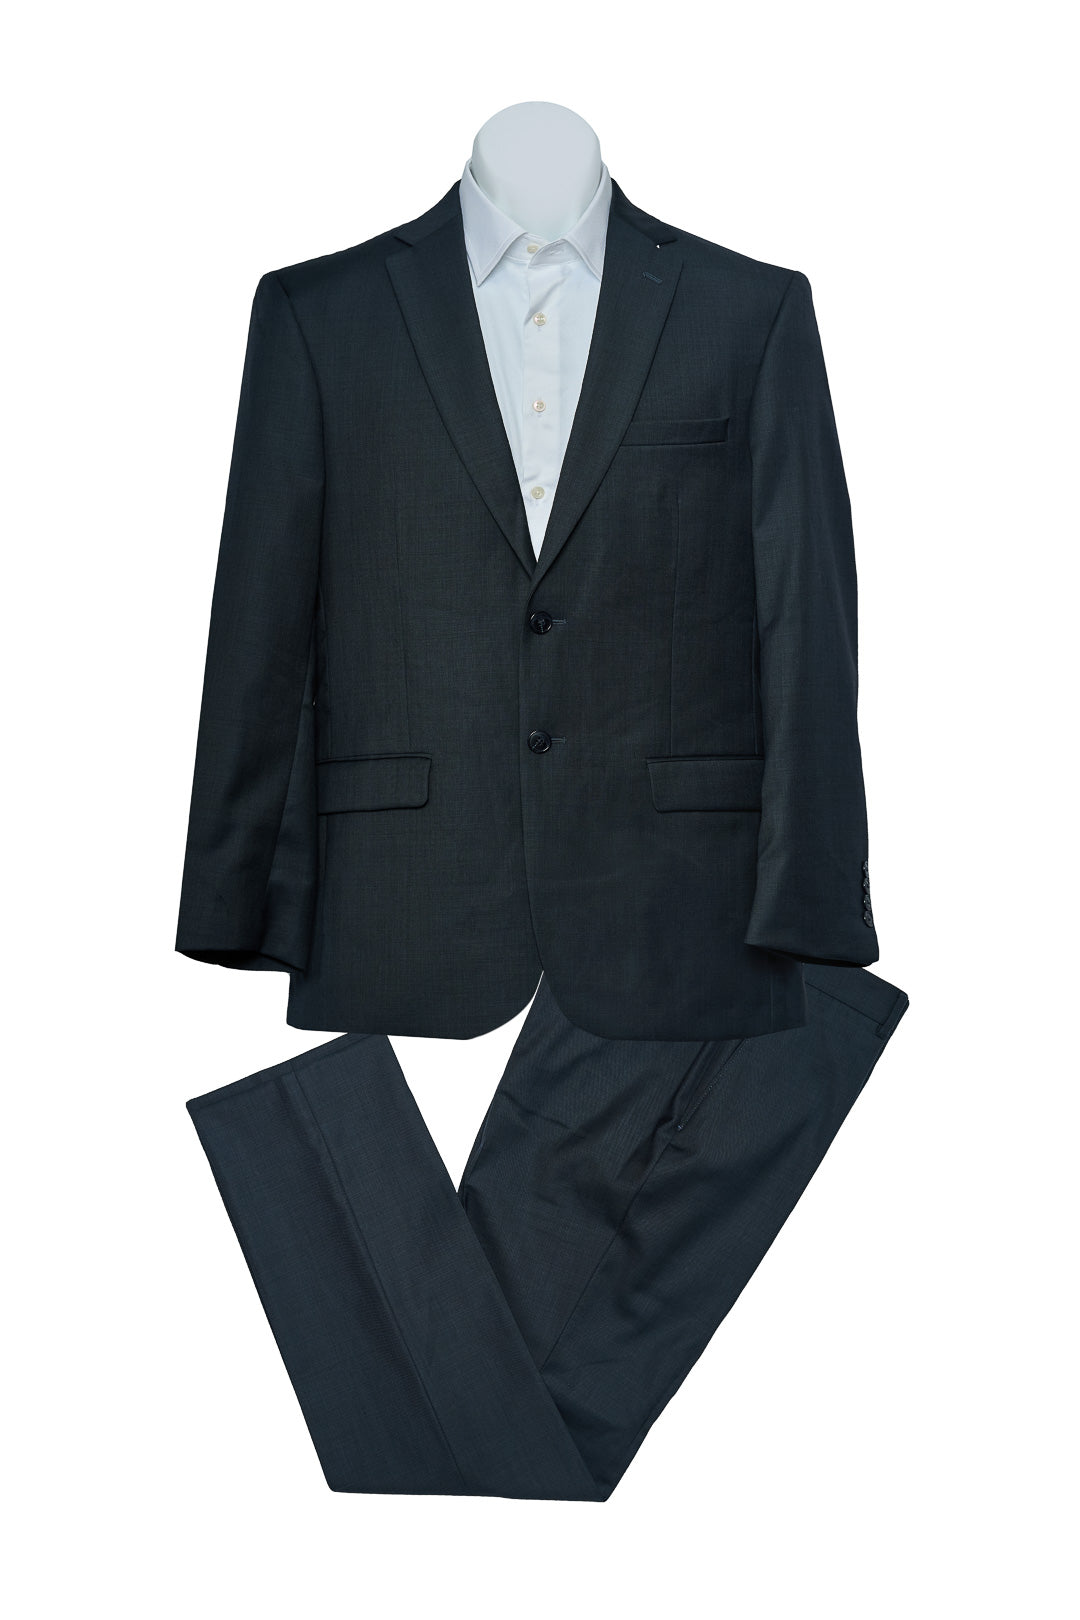 Plain Gray Wool Suit